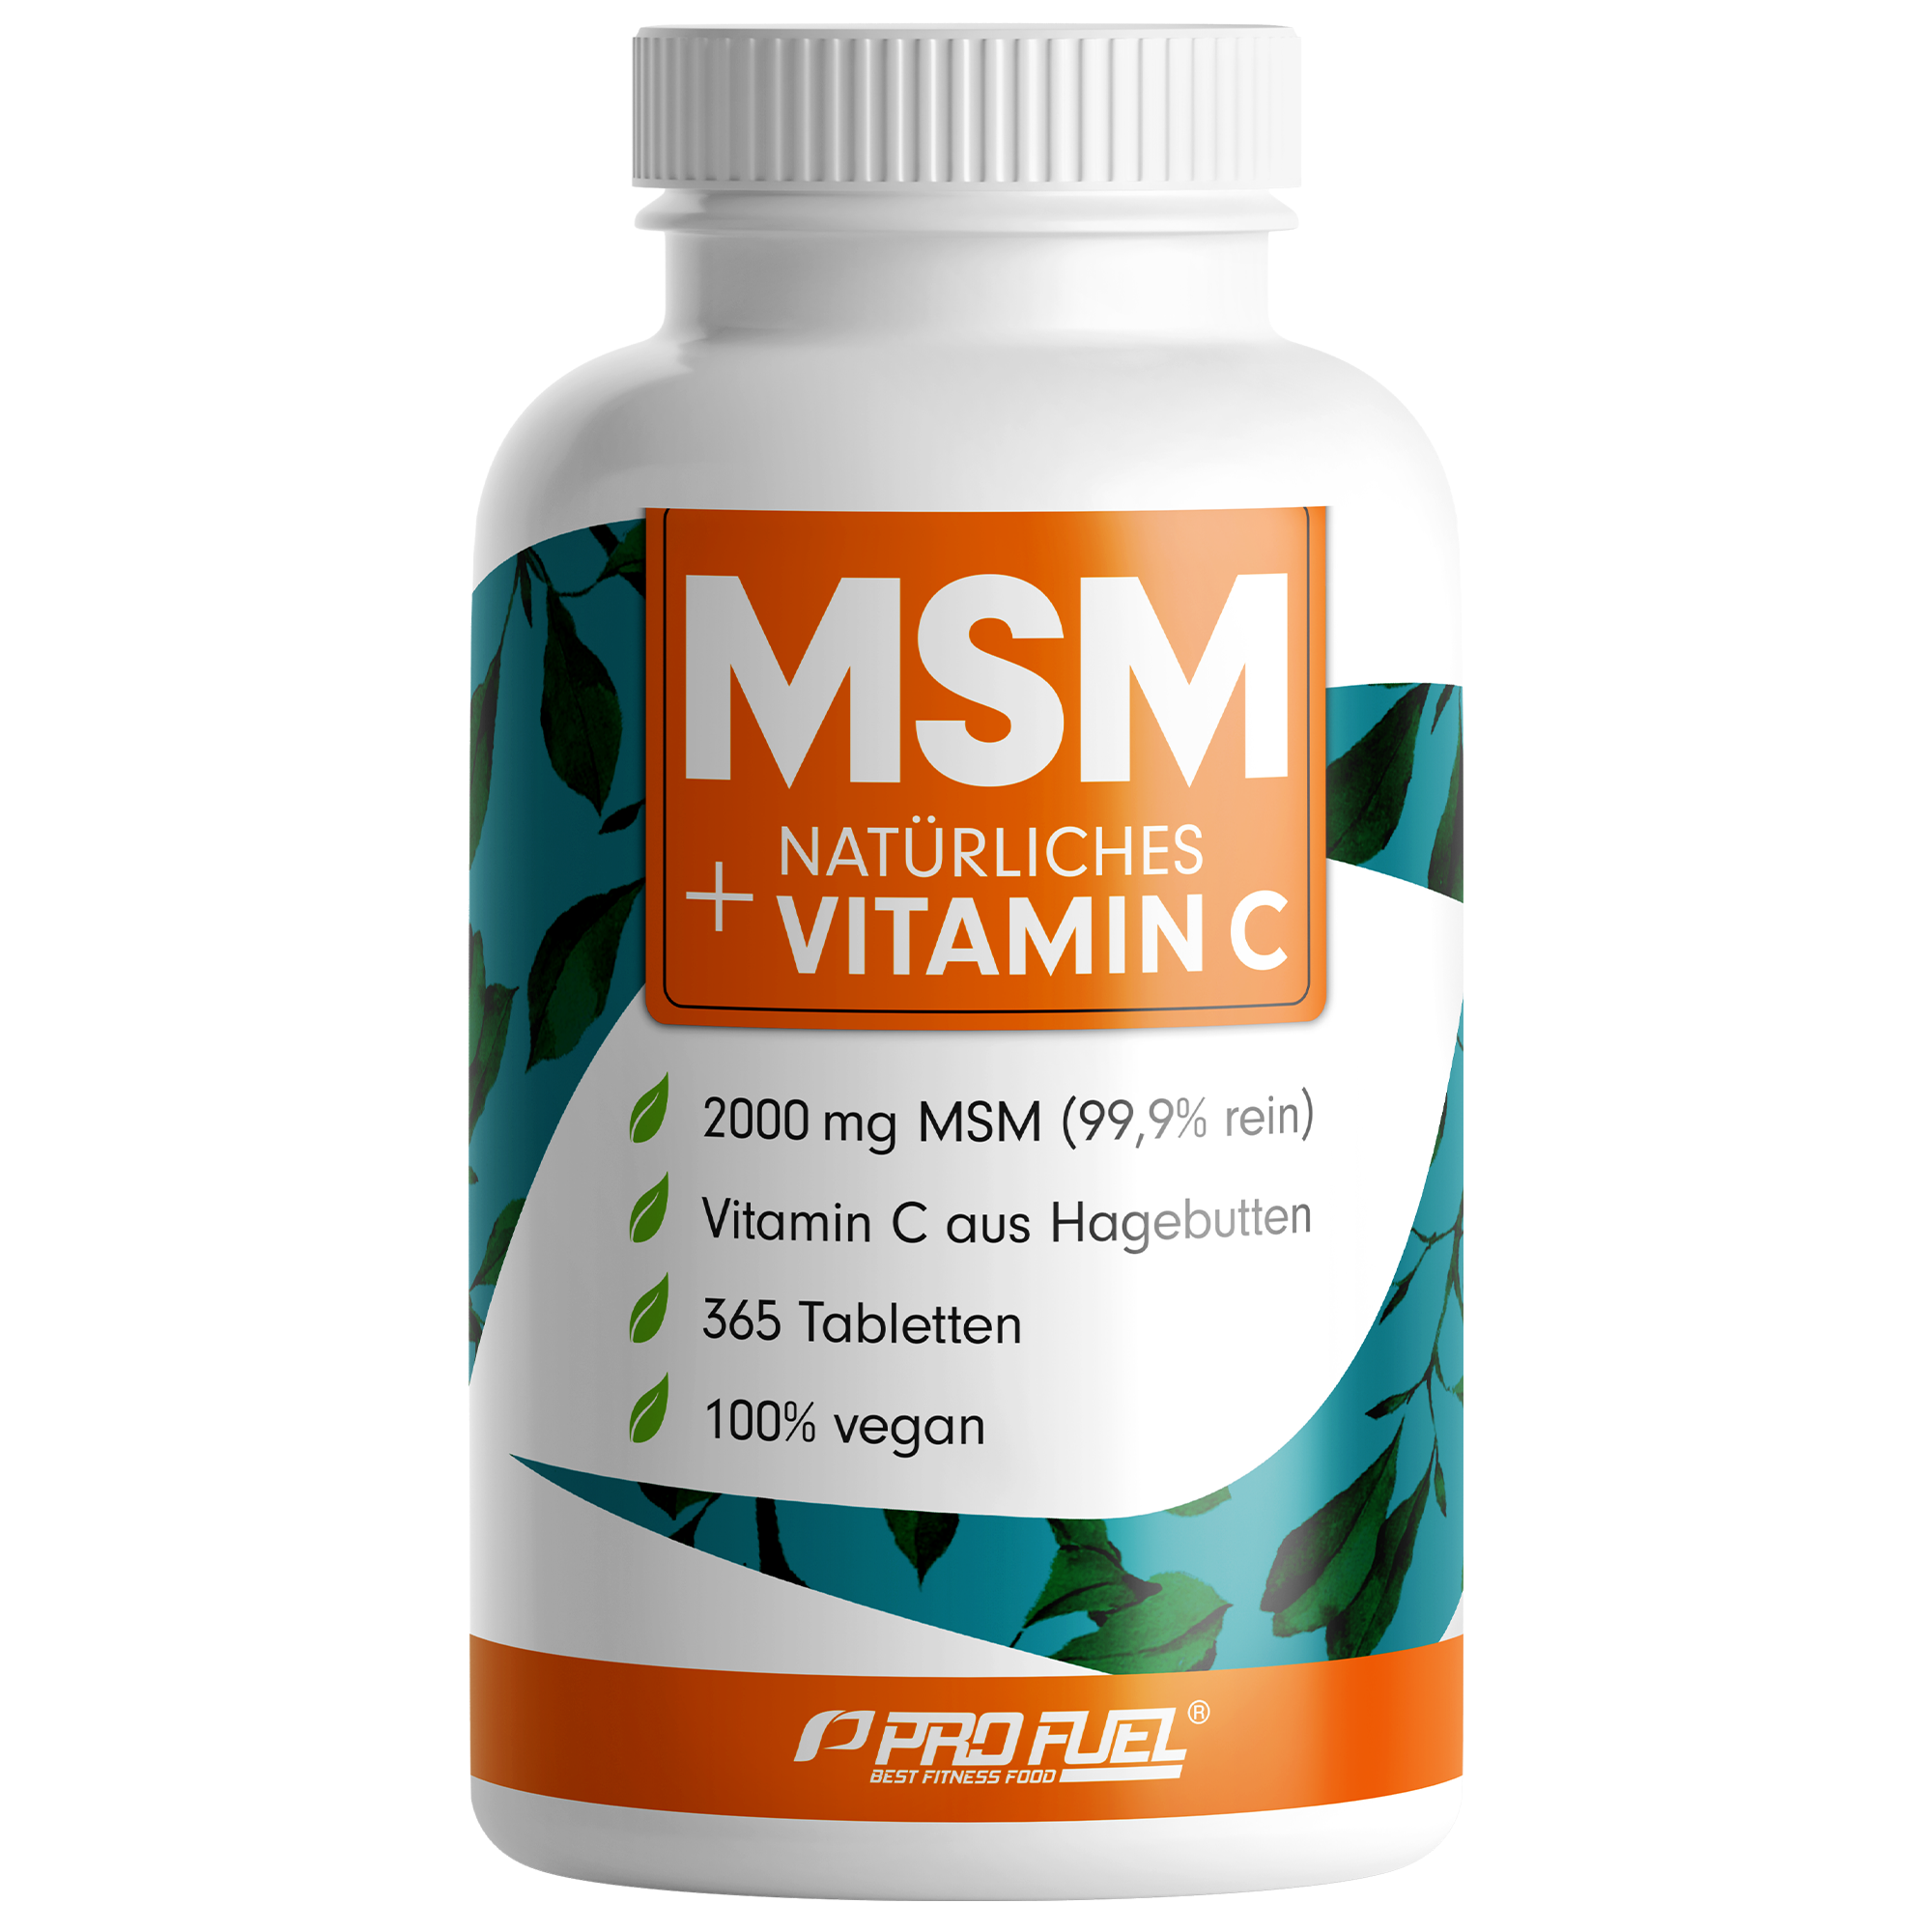 ProFuel MSM + natürliches Vitamin C | 365 Tabletten | 2000mg MSM (99,9% rein) | Vitamin C aus Hagebutten | vegan